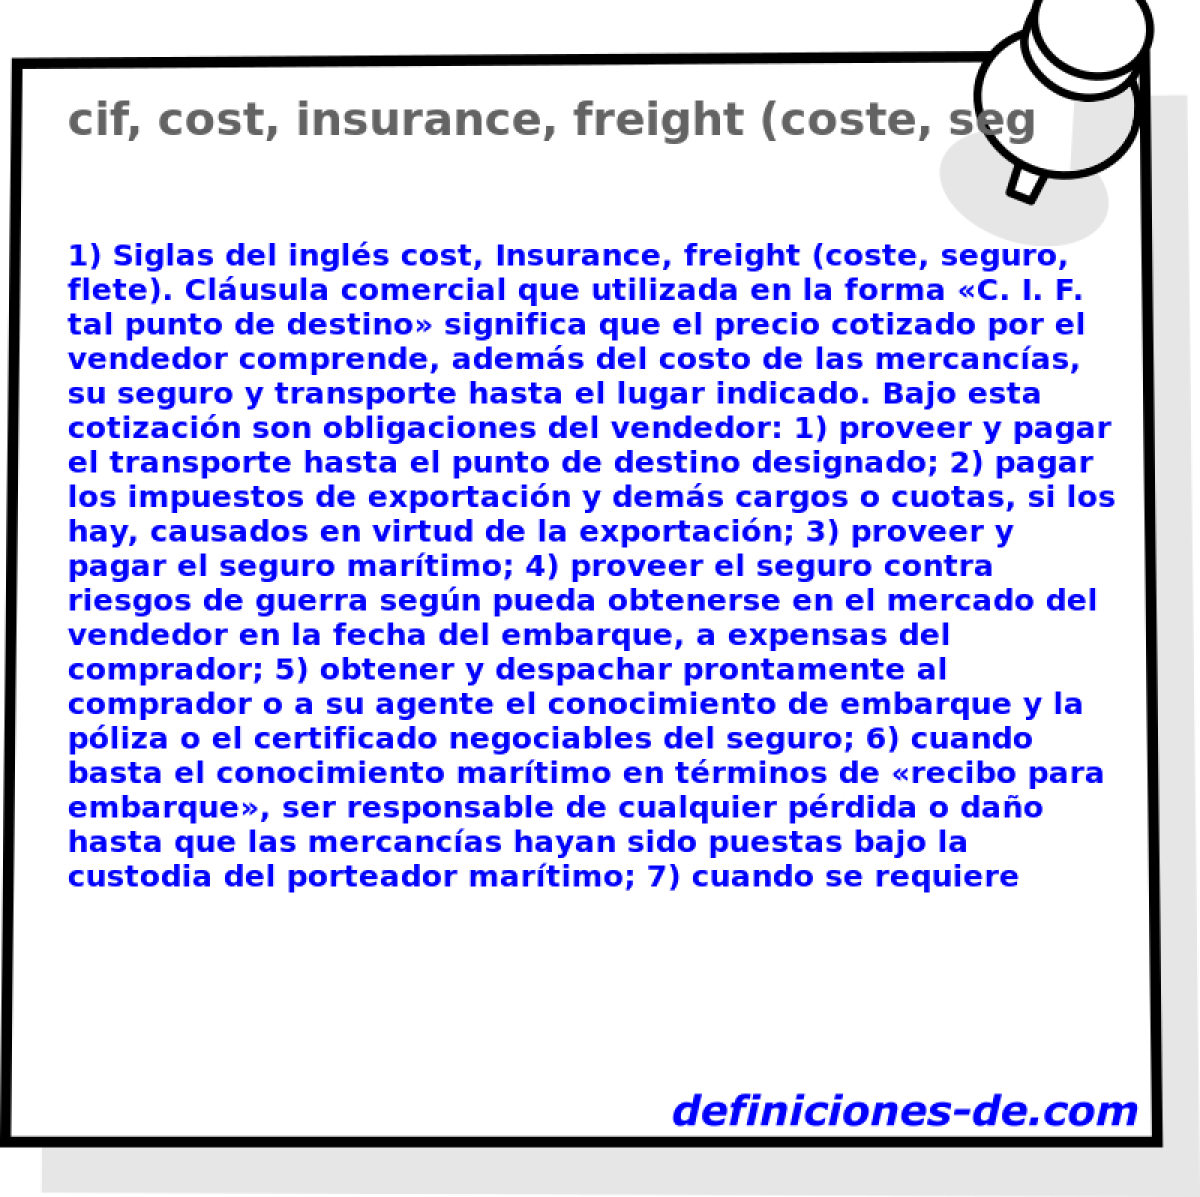 cif, cost, insurance, freight (coste, seguro, flete) 